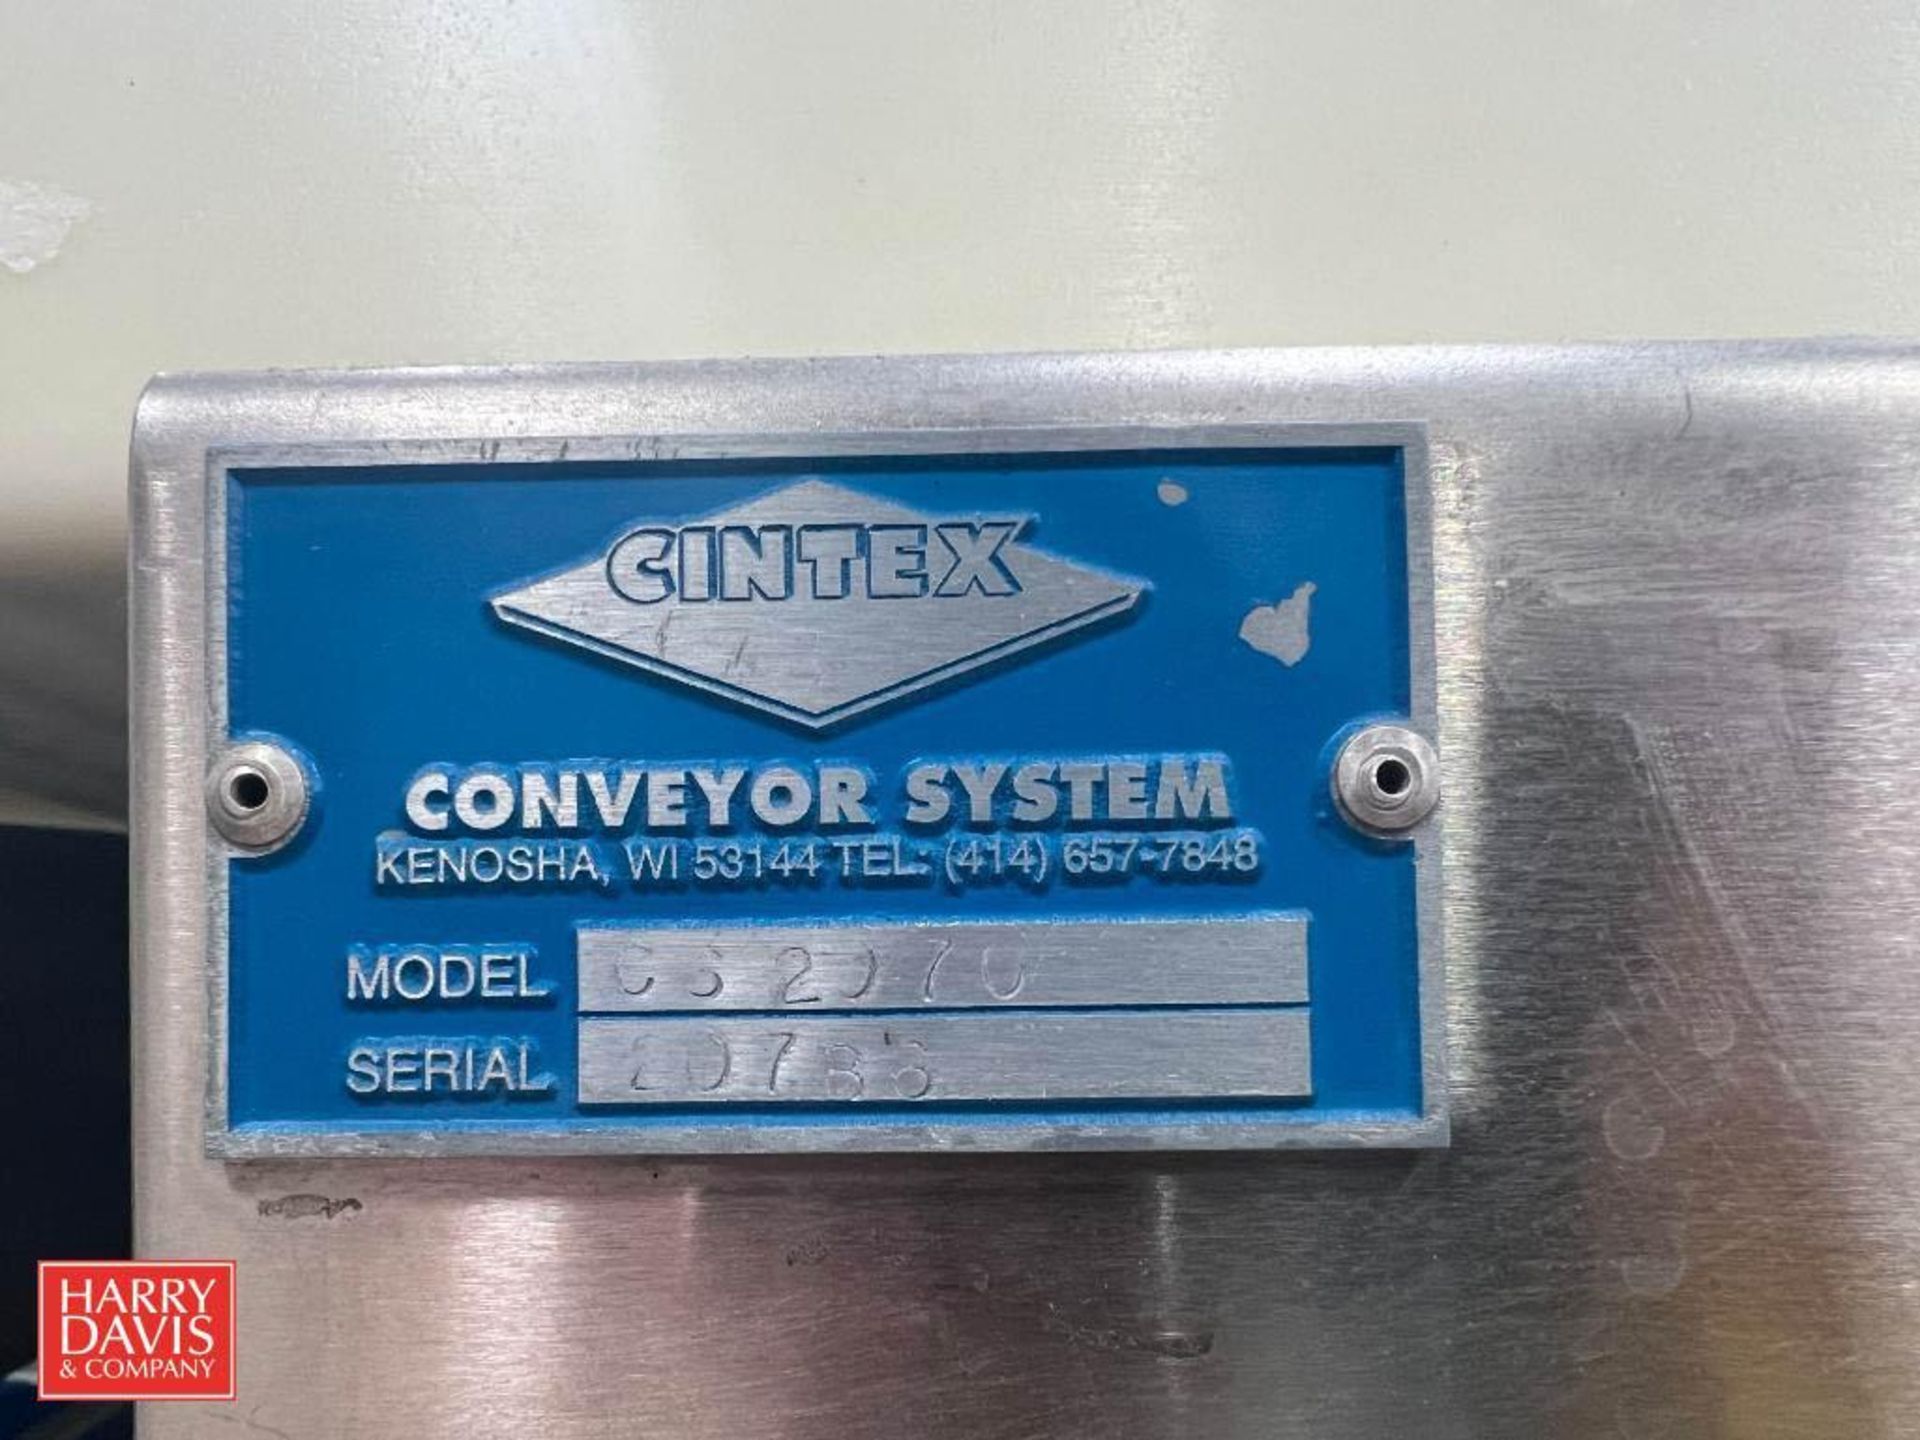 Cintex Metal Detector, Model: CS2070, S/N: 20788 and Conveyor; Dimensions: 26" Length x 24" Width - Image 3 of 3